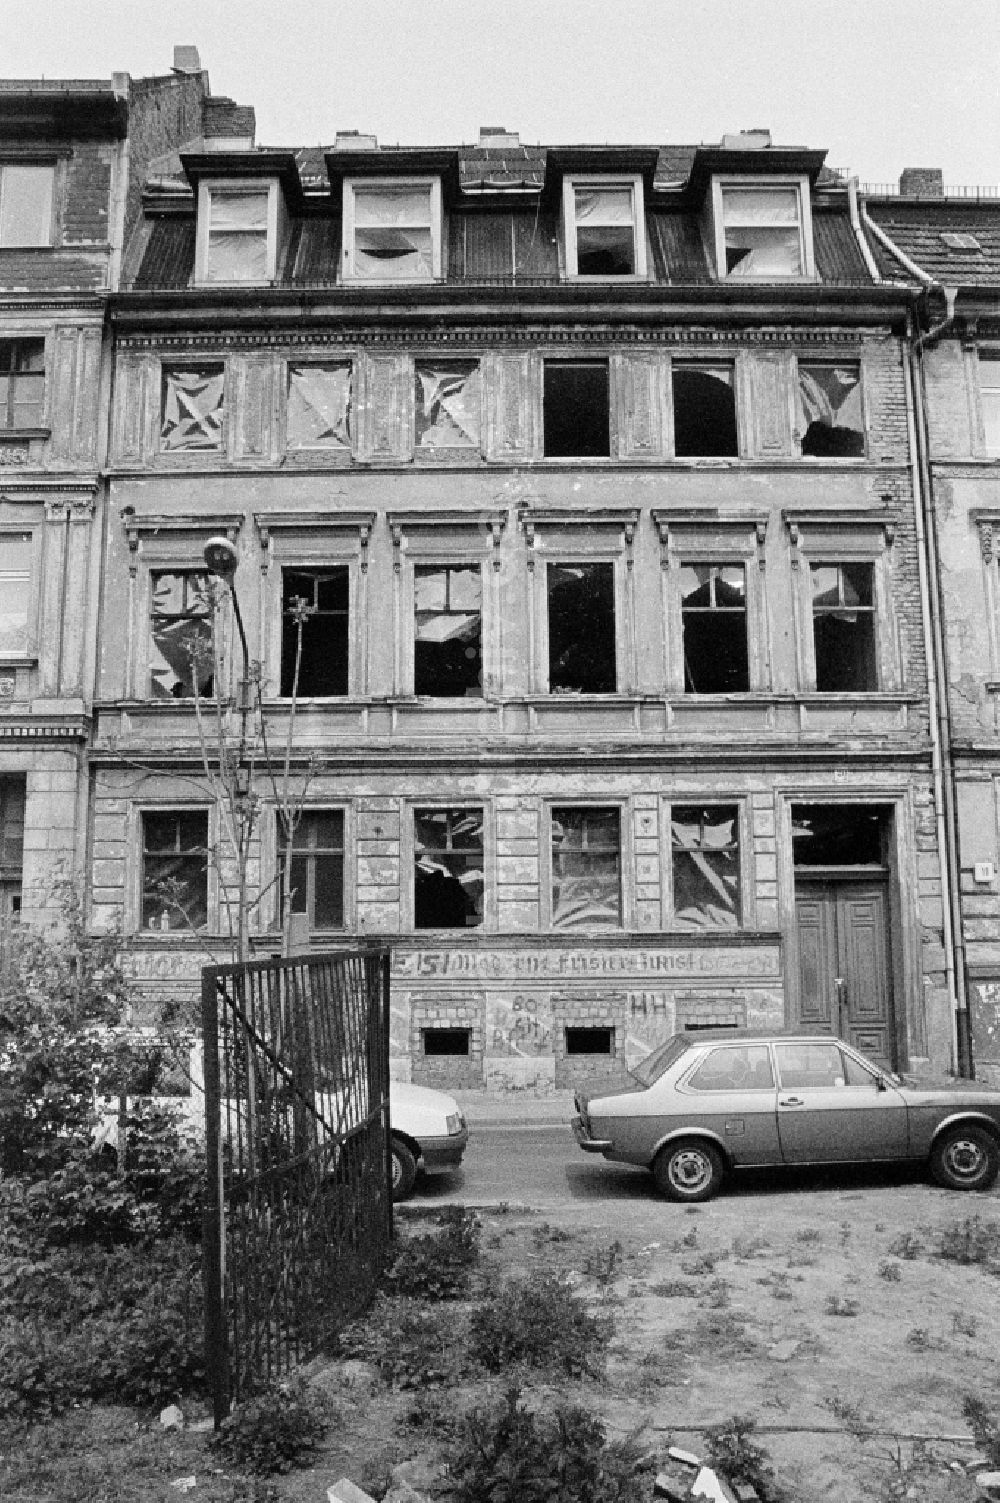 DDR-Bildarchiv: Berlin - Mehrfamilienhausruine im Scheunenviertel in Berlin in der DDR